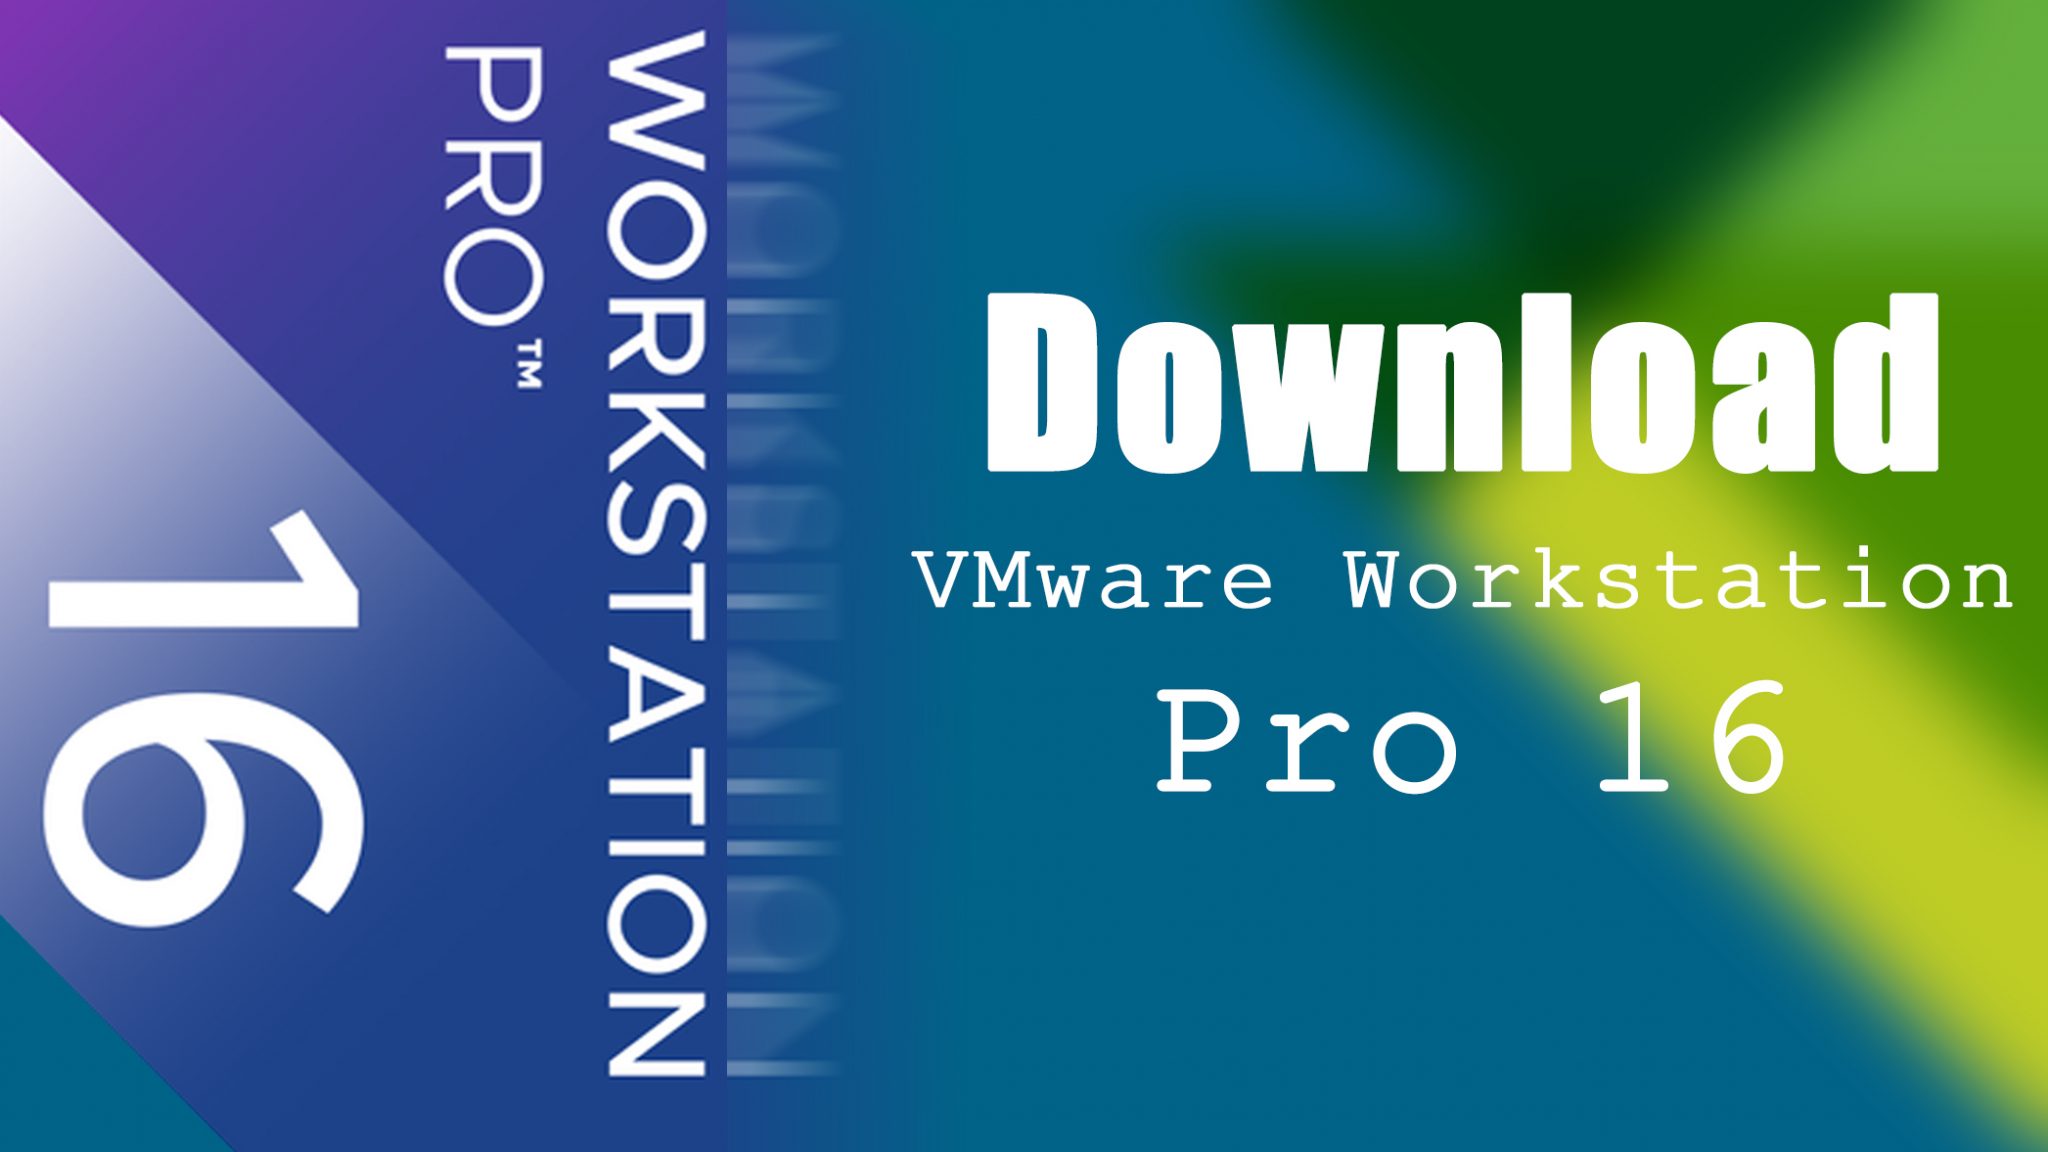 vmware 16 pro workstation download